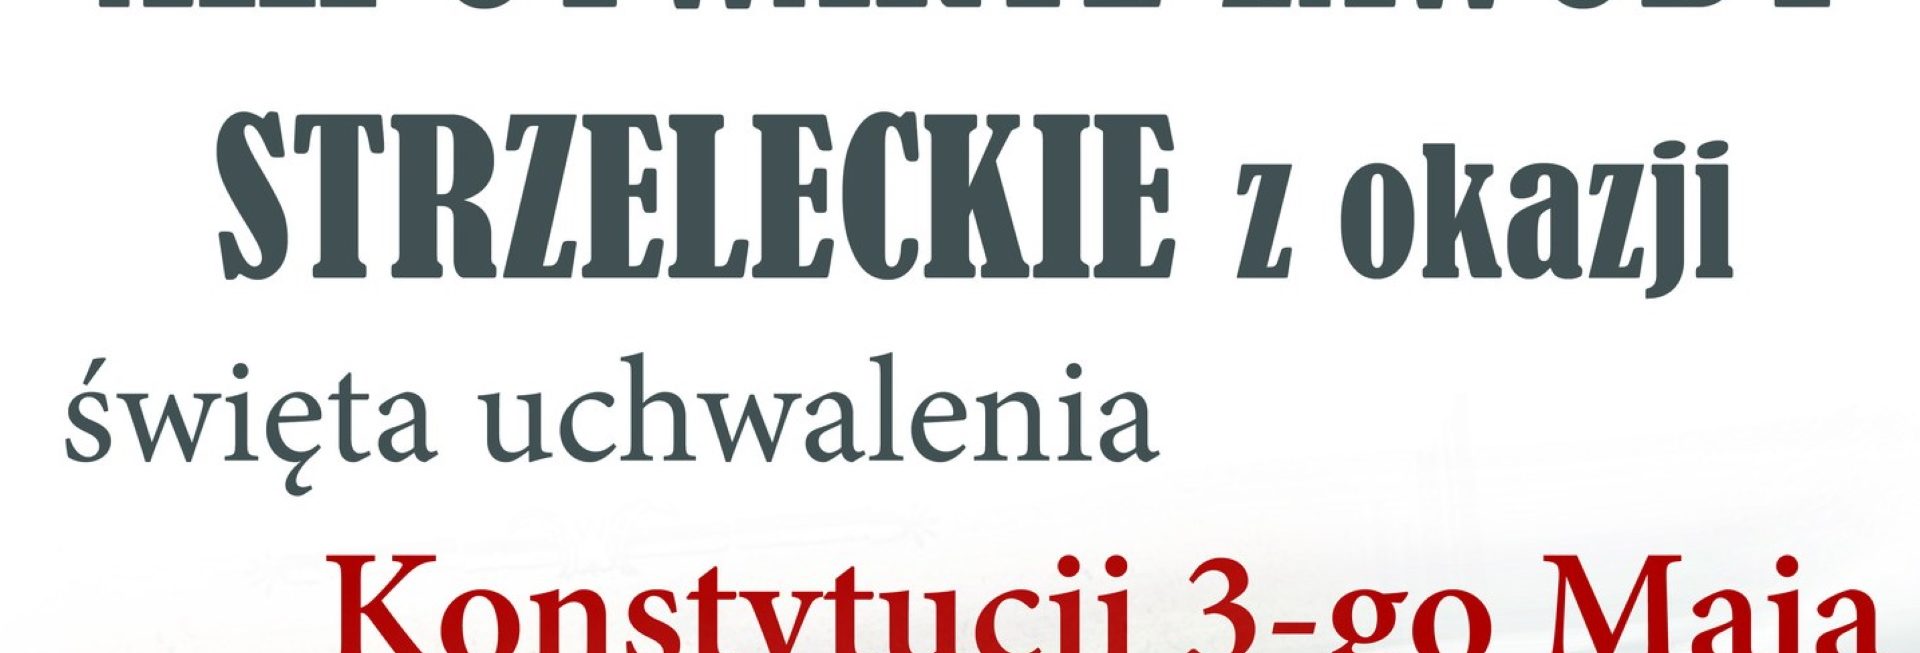 Plakat zapraszający w środę 3 maja 2023 r. do Jonkowa na 13. edycję Otwartych Zawodów Strzeleckich z okazji uchwalenia Konstytucji 3-go Maja Jonkowo 2023.